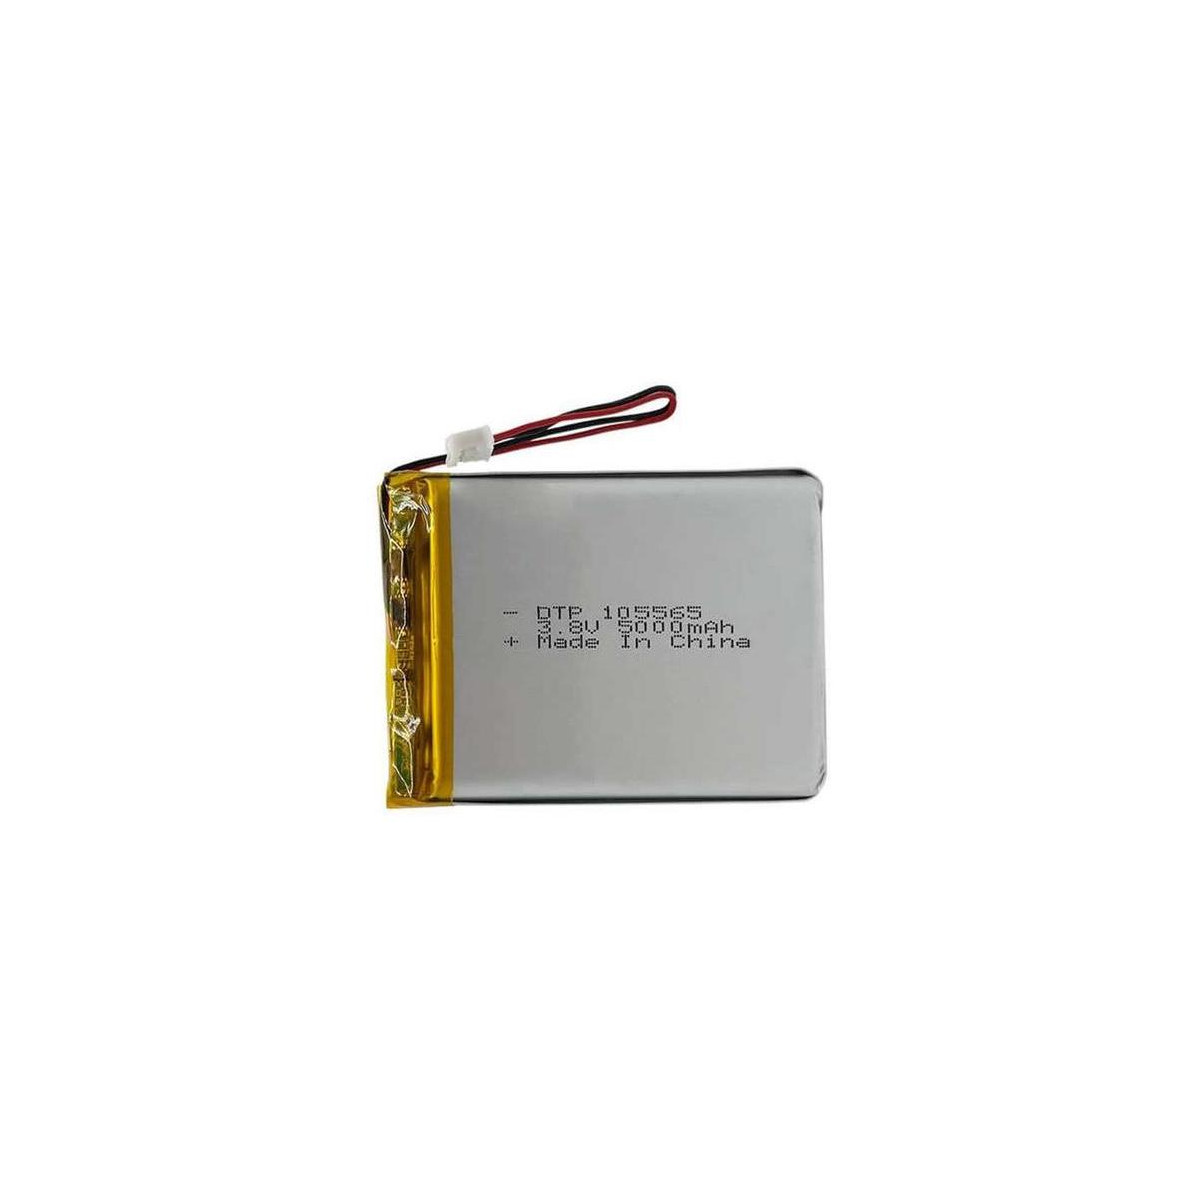 More about Baterie nabíjecí LiPo 3,7V/4200mAh 105565 Hadex